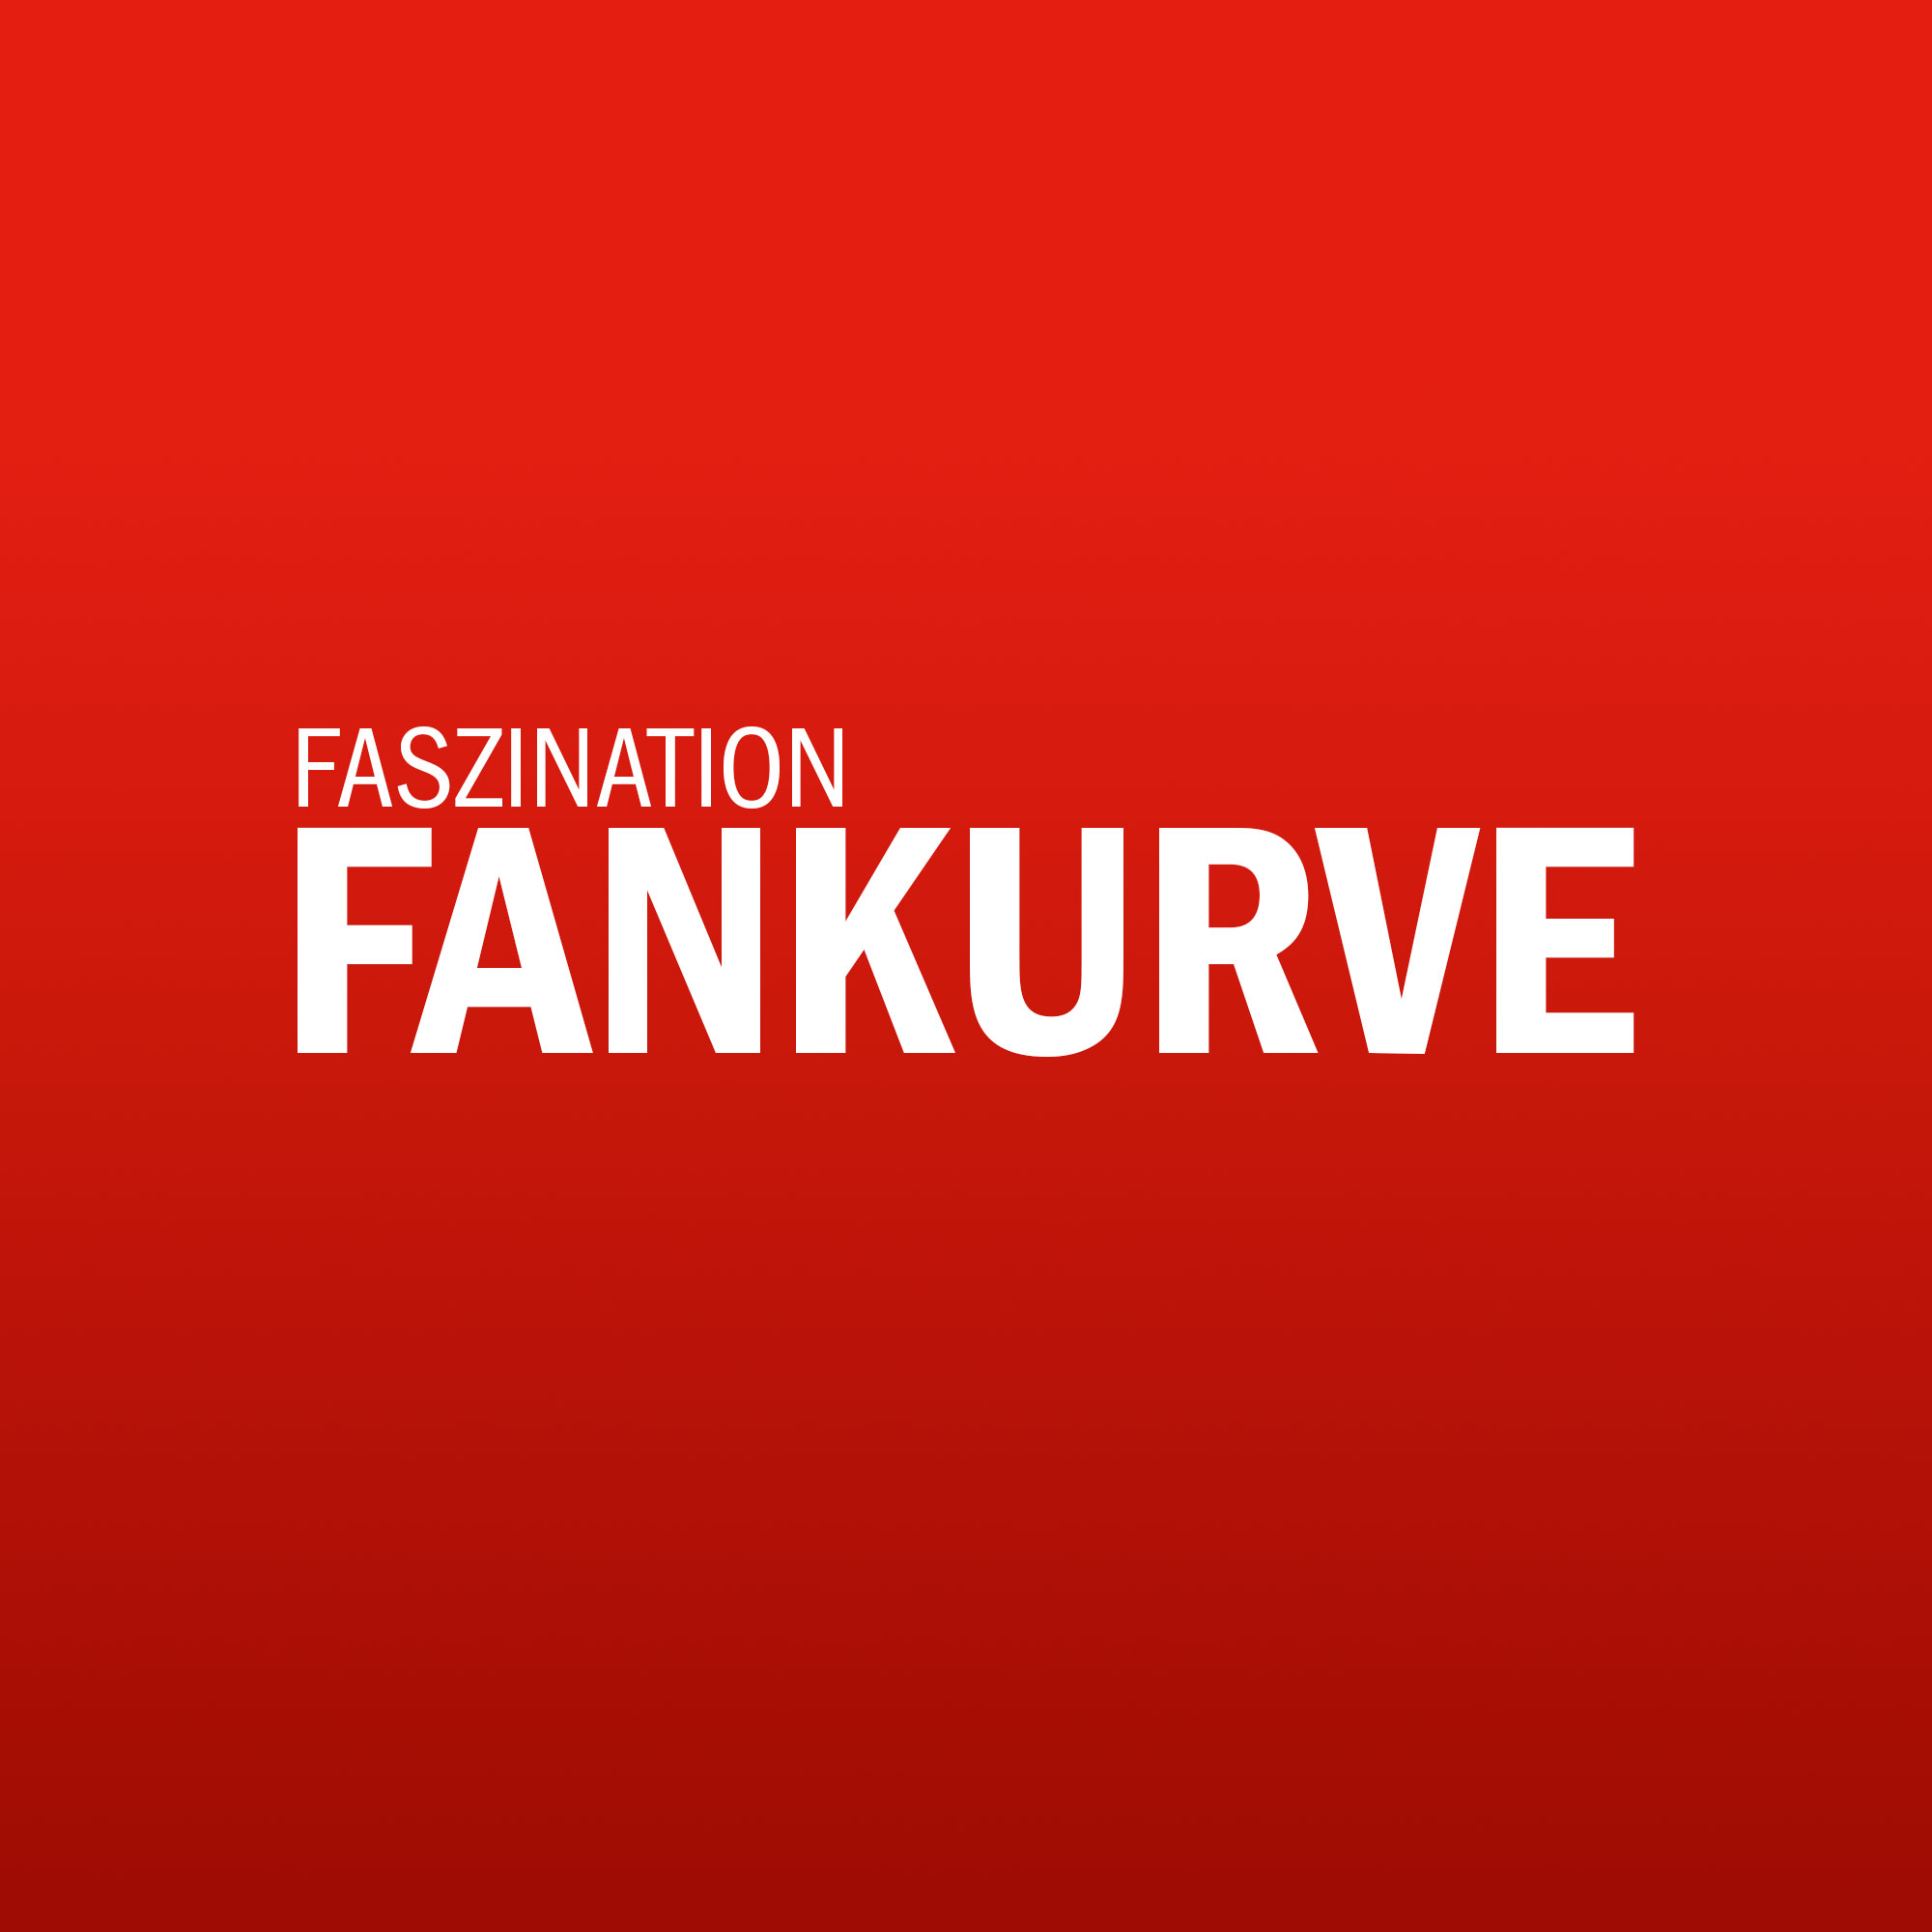 www.faszination-fankurve.de